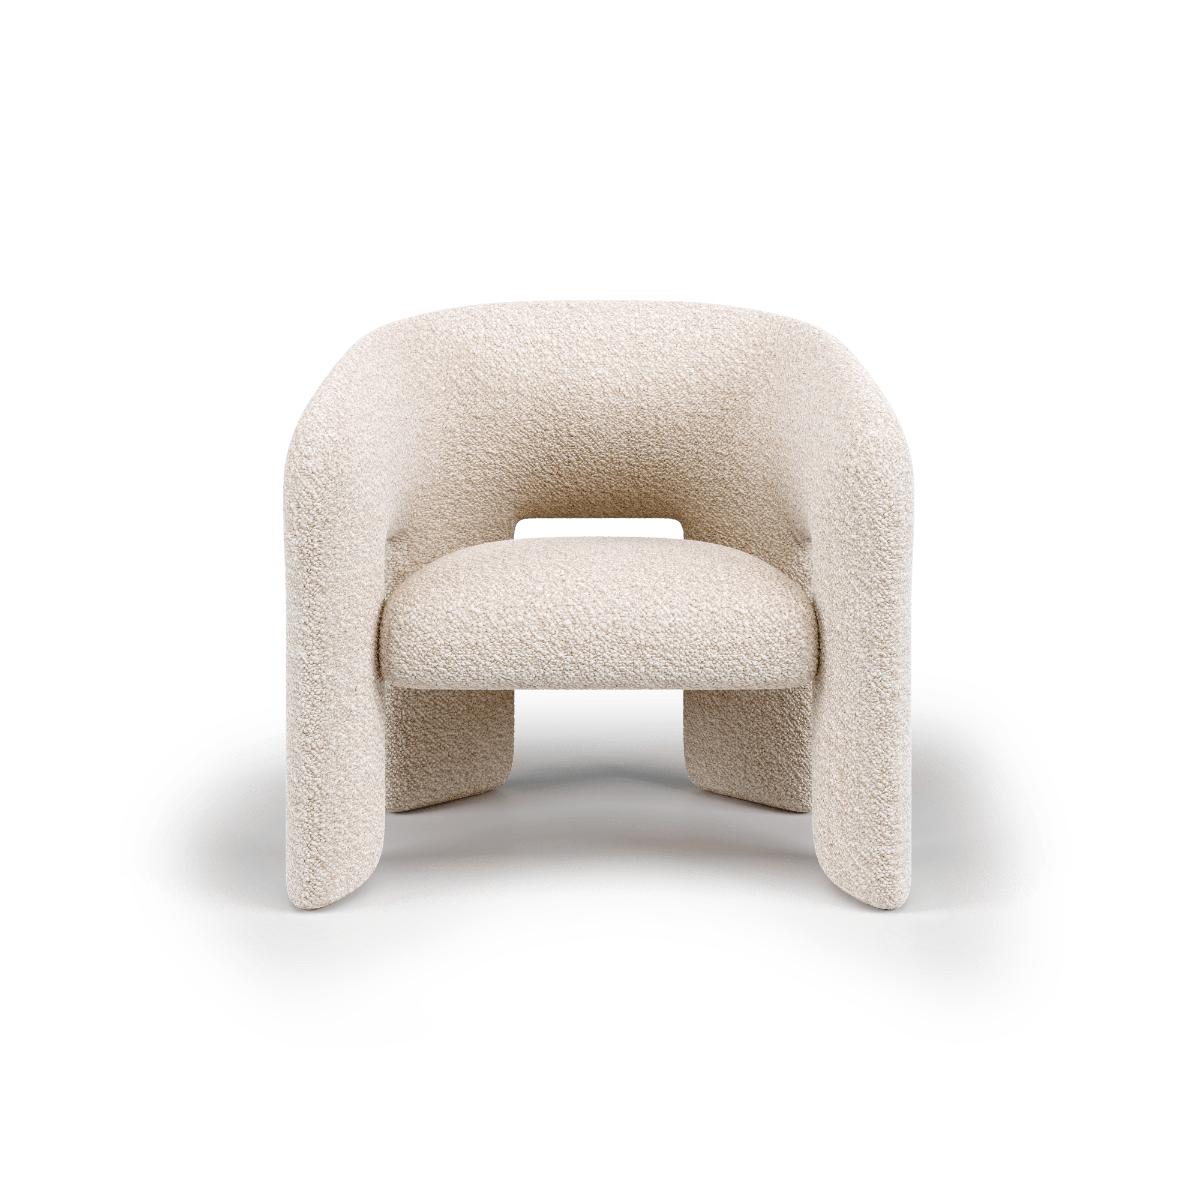 Bold Sessel von Mohdern
Abmessungen: B 78 x T 65 x H 73 cm
MATERIALIEN: Stoff, Bouclé


Bold ist ein komfortabler Sessel mit umhüllenden Linien und verschiedenen geometrischen Formen, die durch das Zusammentreffen von Know-how und einem